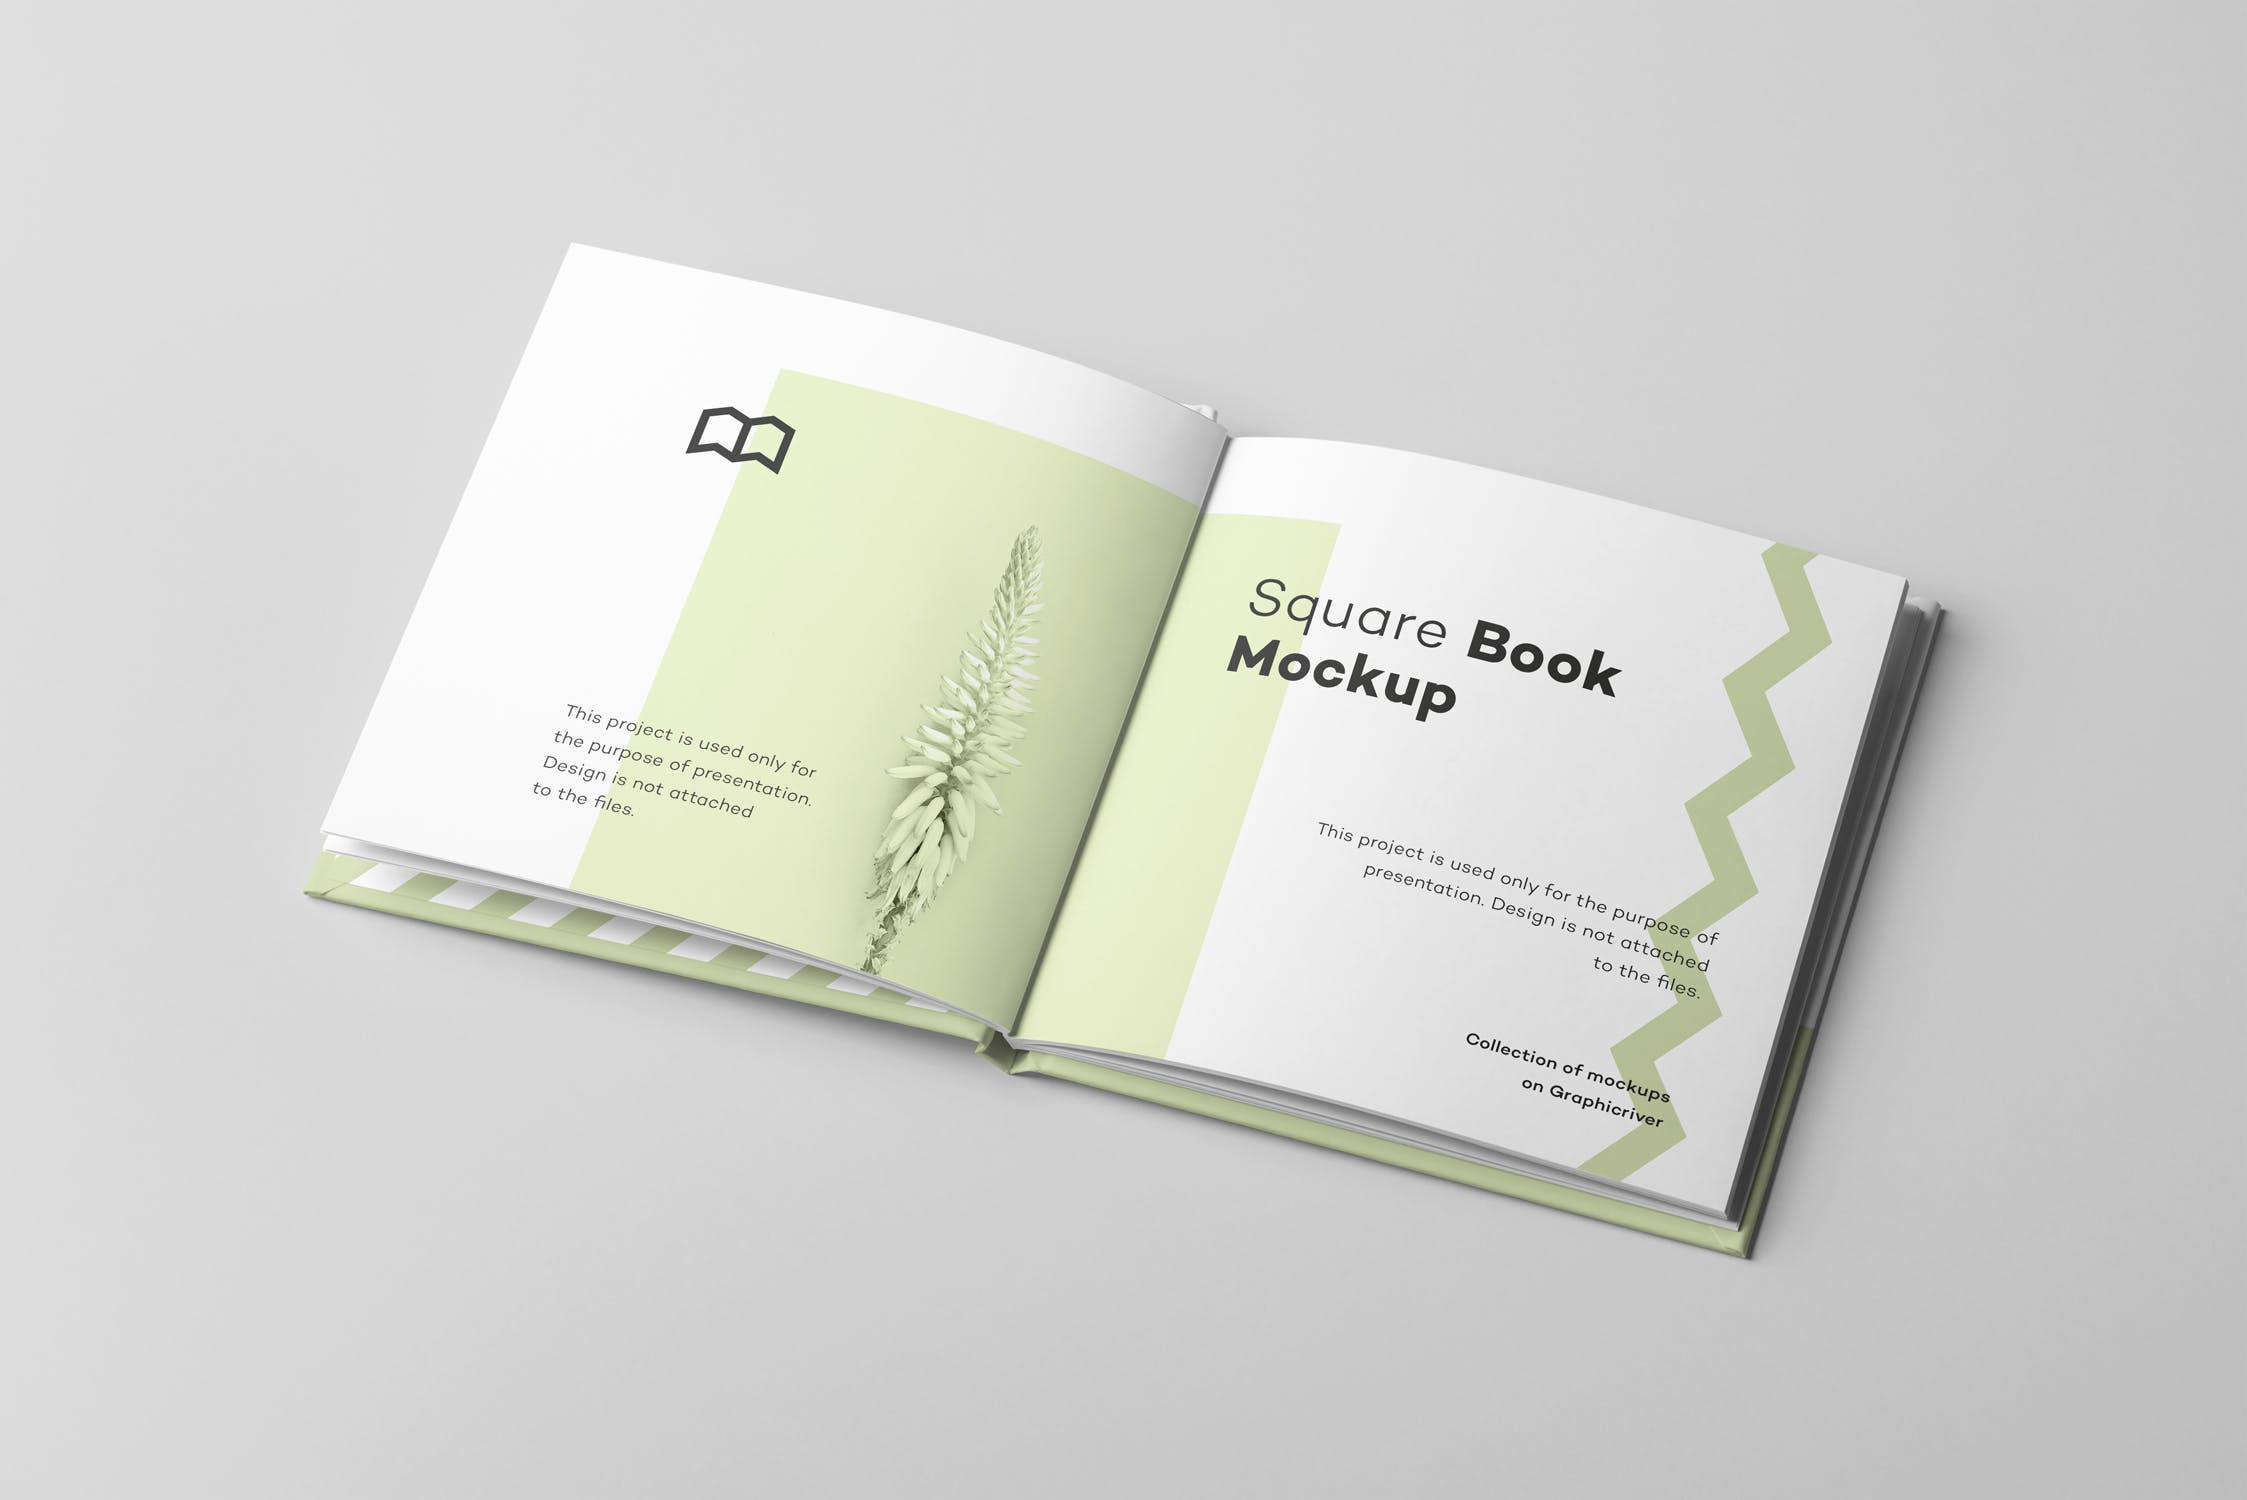 方形精装图书封面&内页版式设计预览样机 Square Book Mock up 2插图(3)